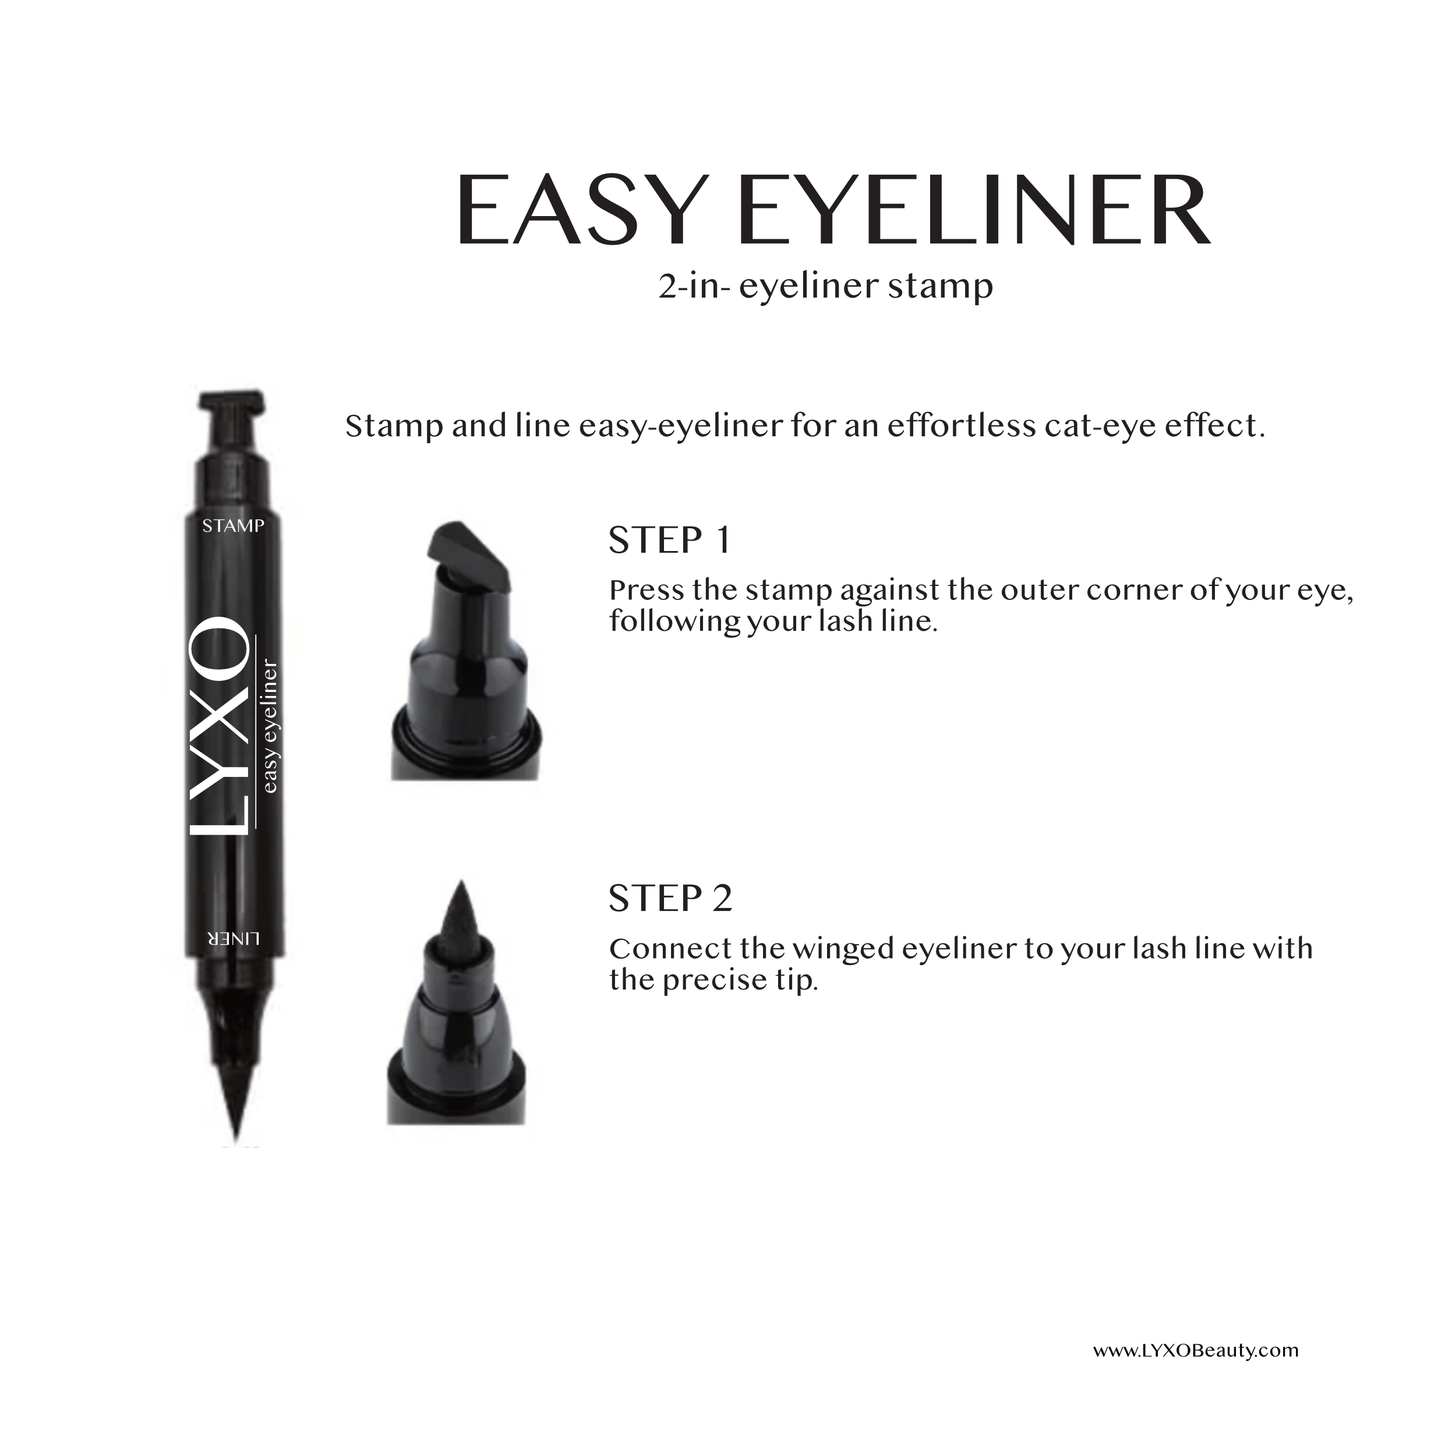 Easy Eyeliner: 2-in-1 Stamp + Liner pen